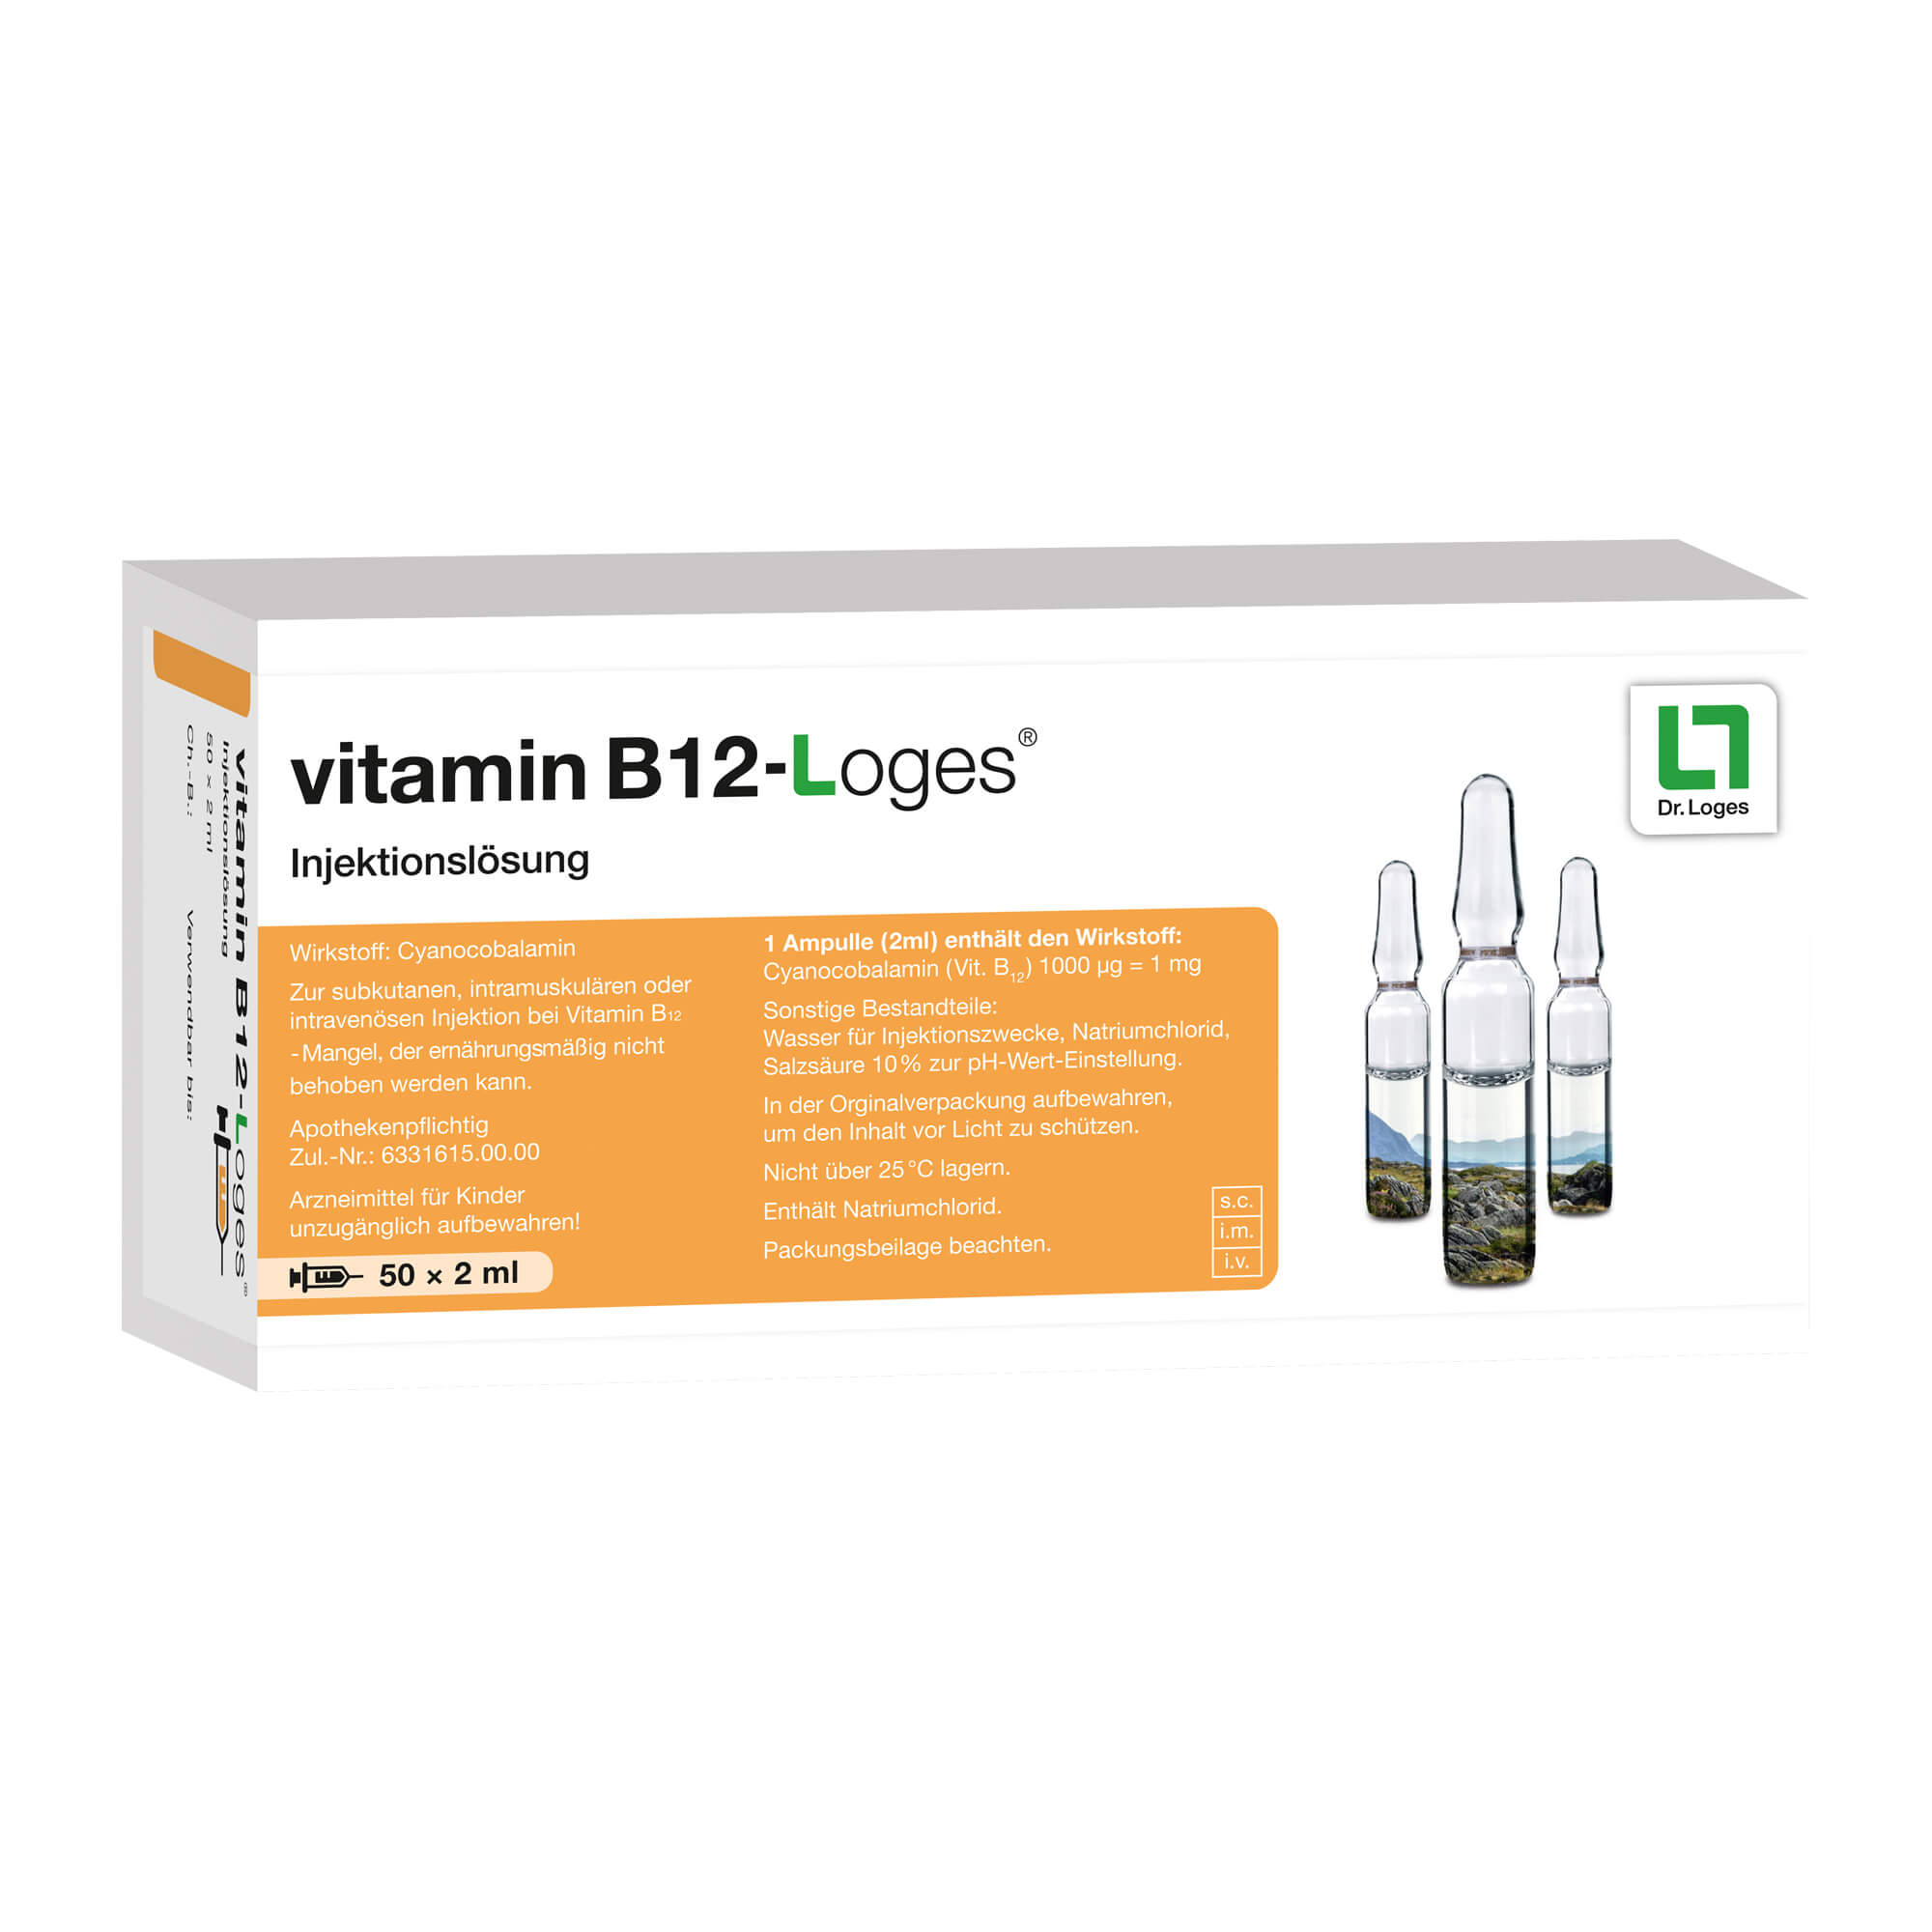 Vitamin-Präparat zur Anwendung bei Vitamin B12-Mangel, der ernährungsmäßig nicht behoben werden kann.